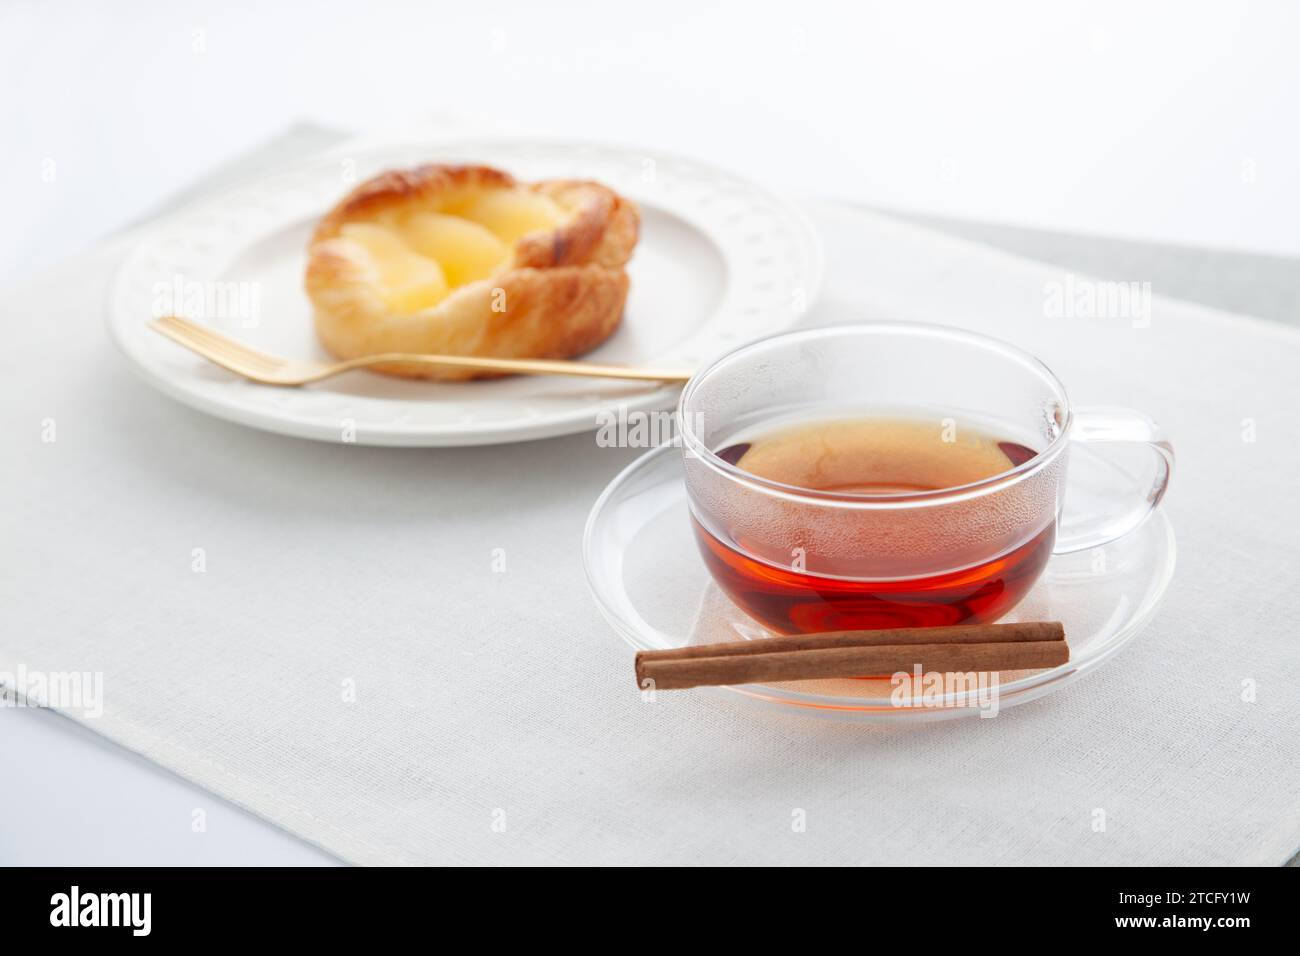 tarte chaude aux pommes au thé sur la table Banque D'Images